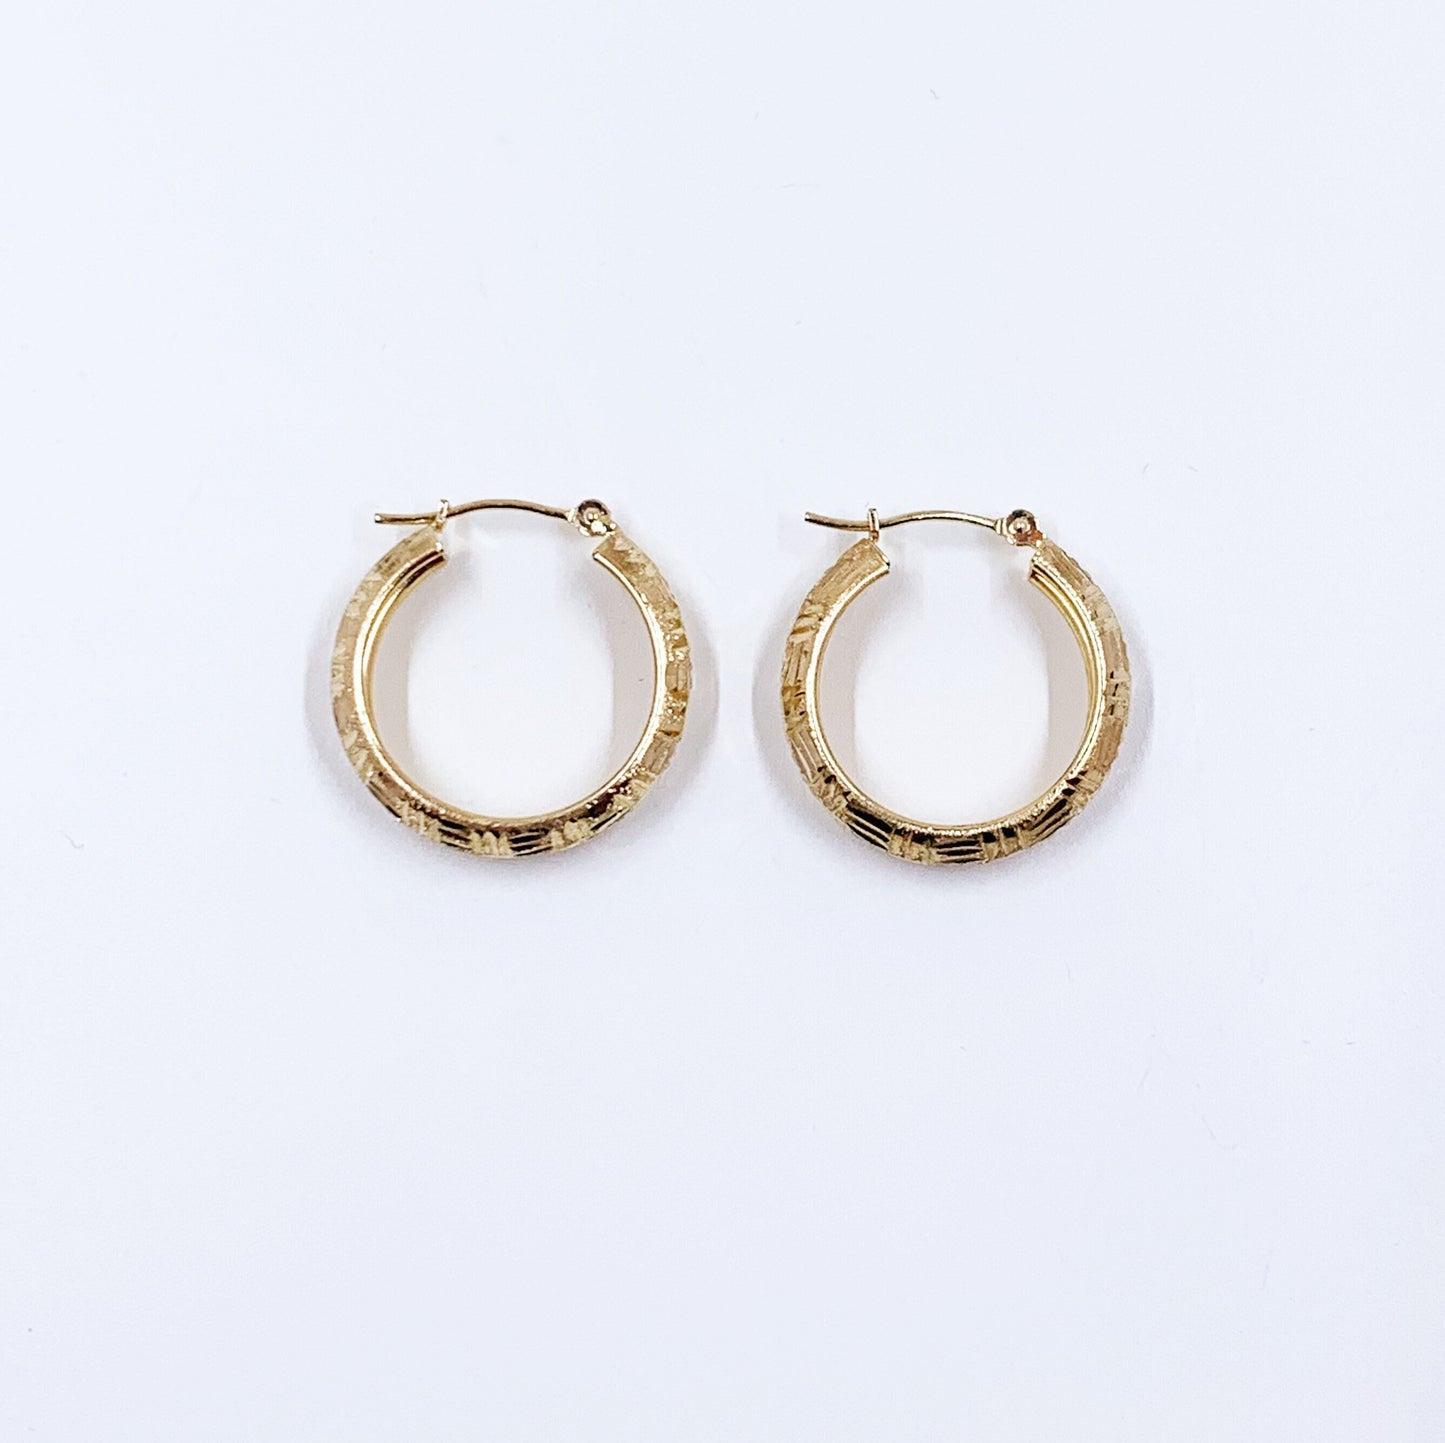 Vintage 10k Textured Gold Hoop Earrings | Small 10K Gold Hoops